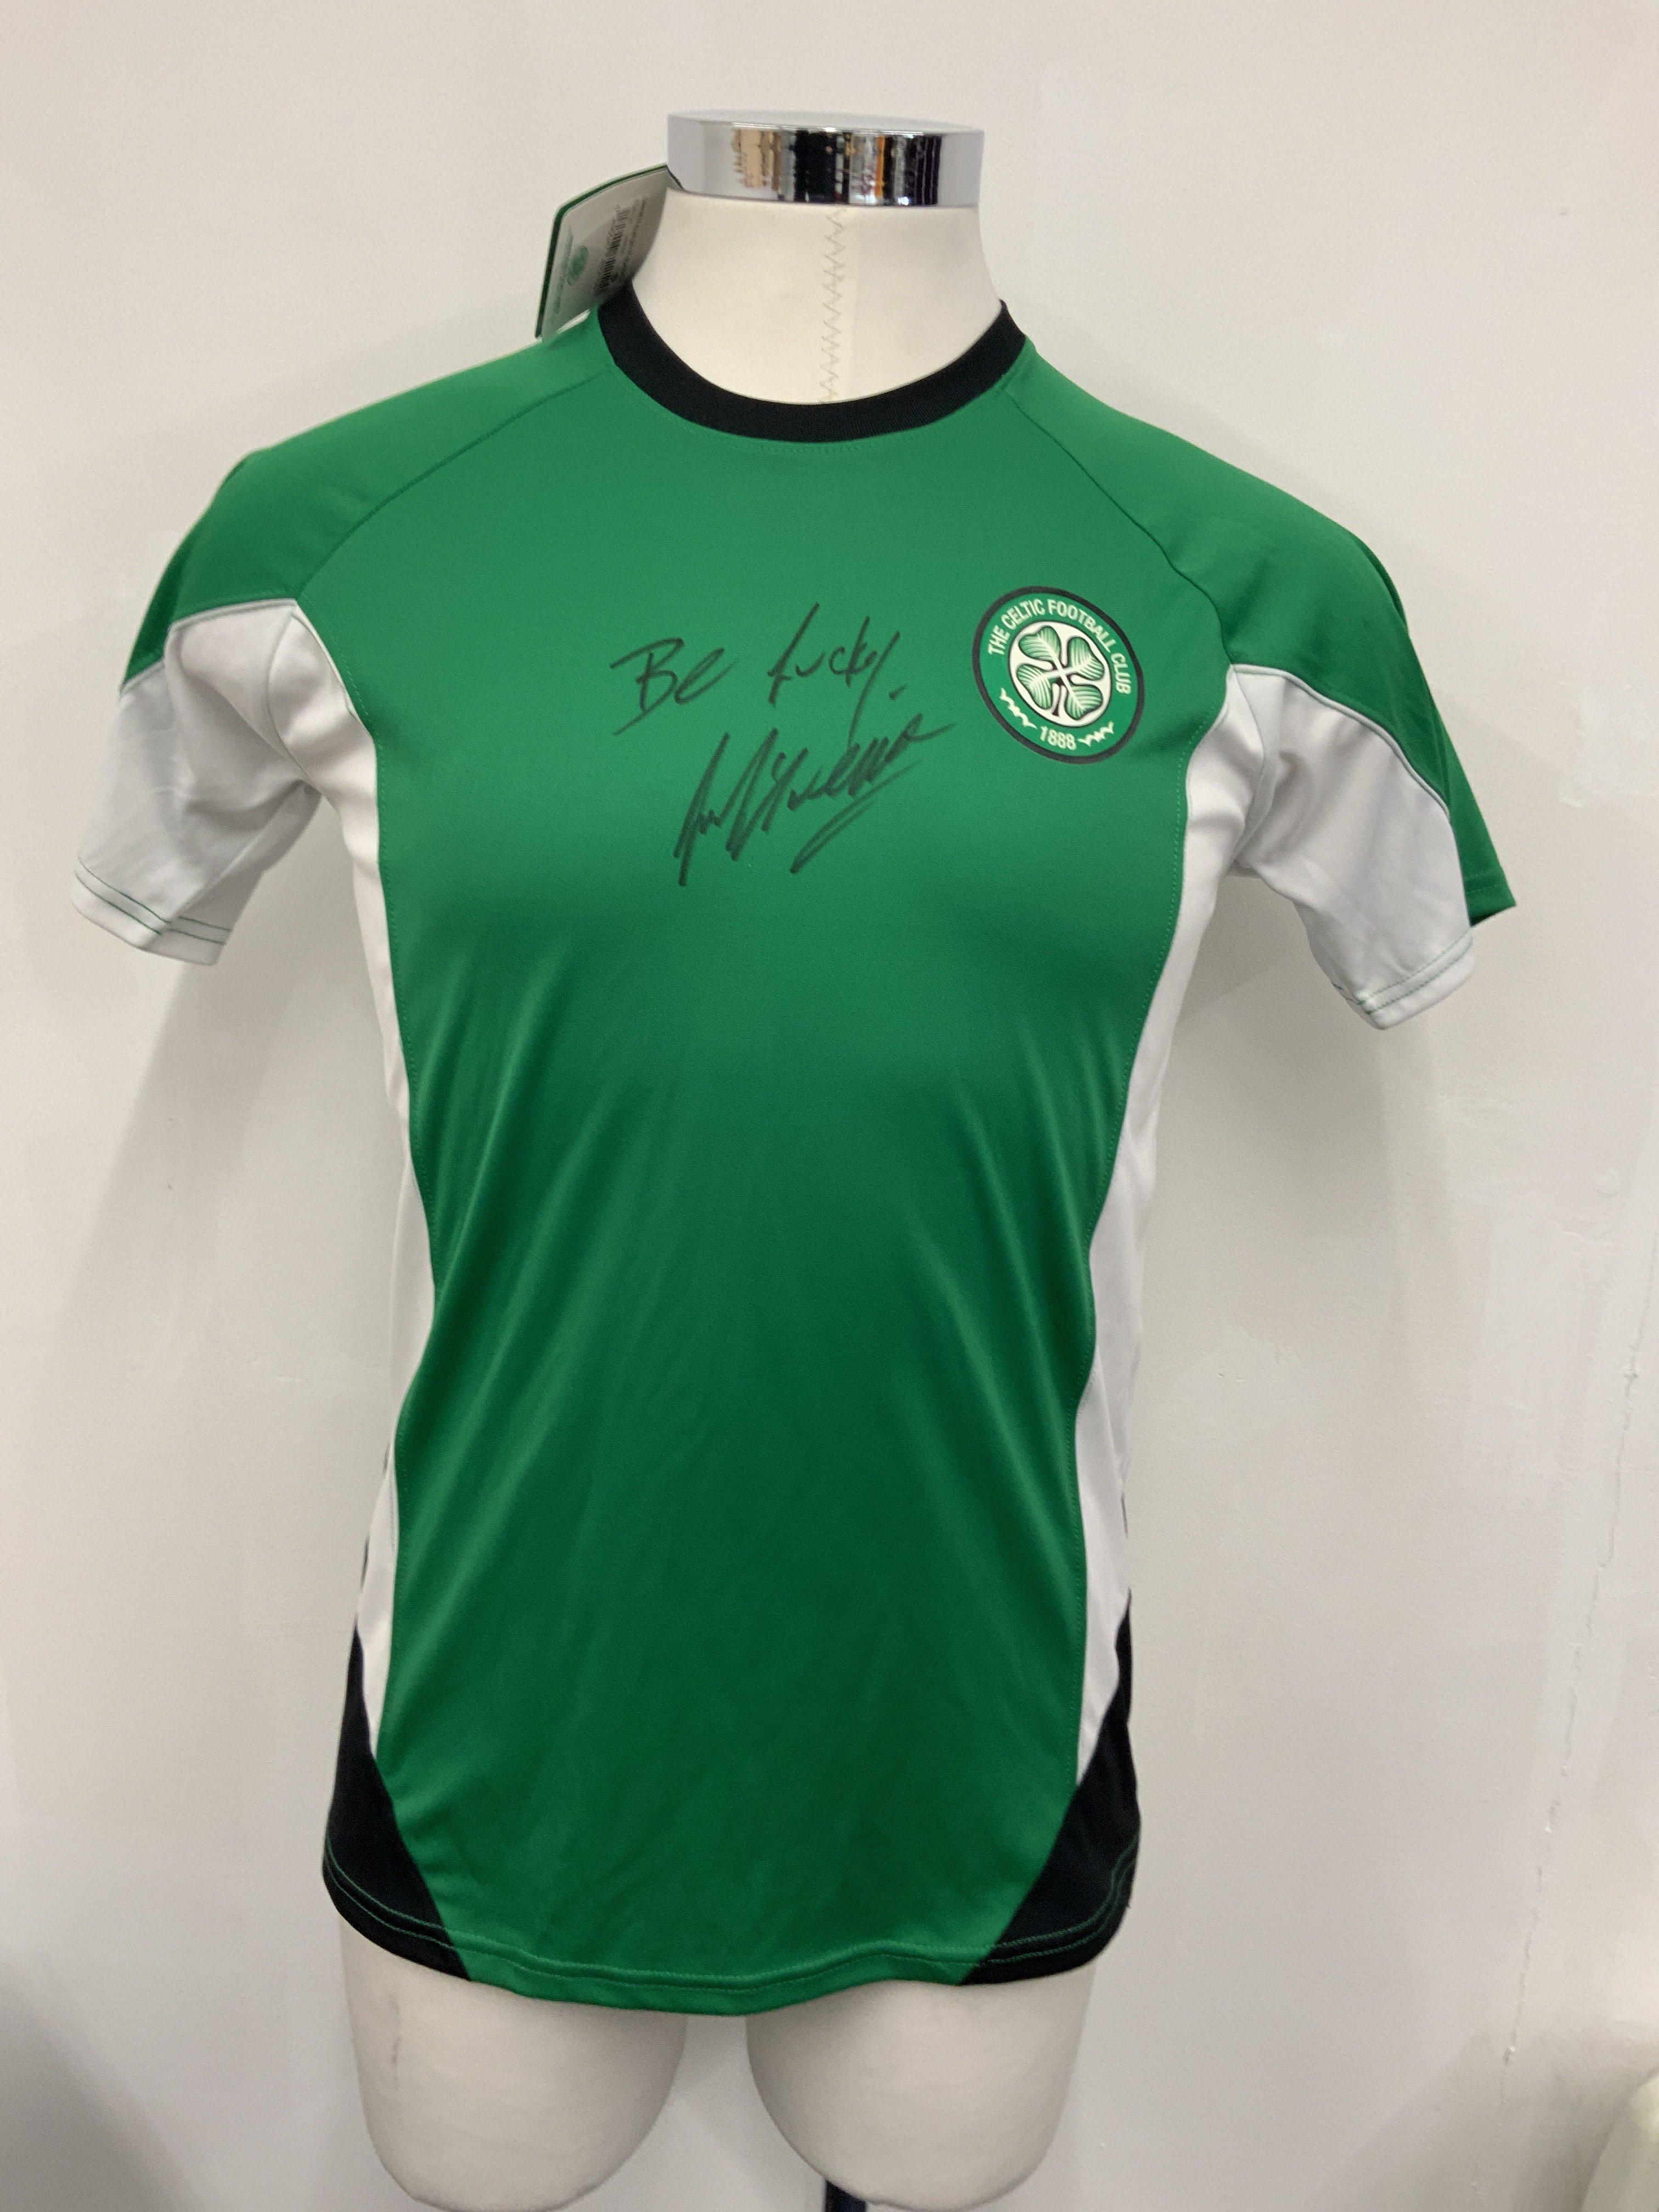 McAvennie Celtic Signed Football Shirts: Unused gr - Image 2 of 3